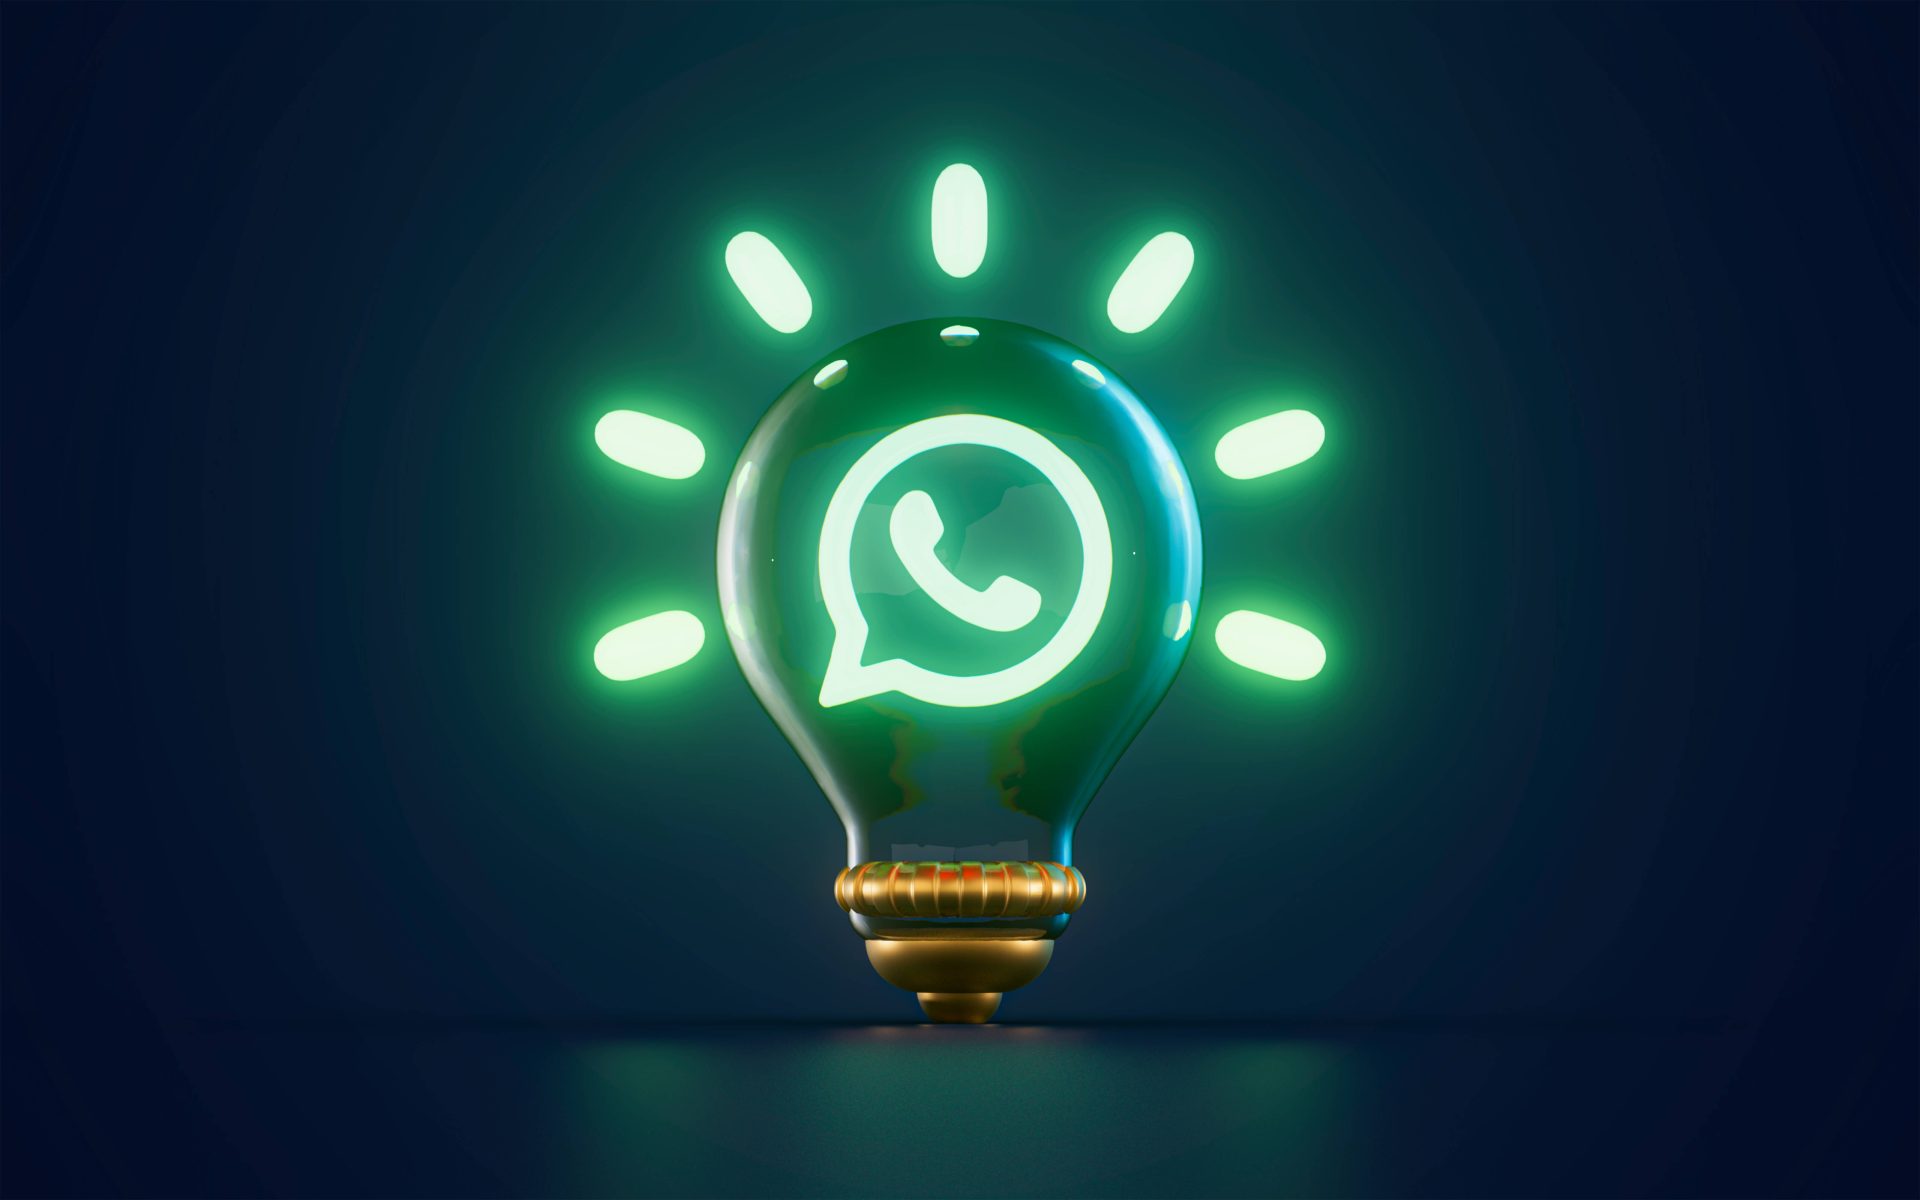 Símbolo do WhatsApp brilhante em uma lâmpada